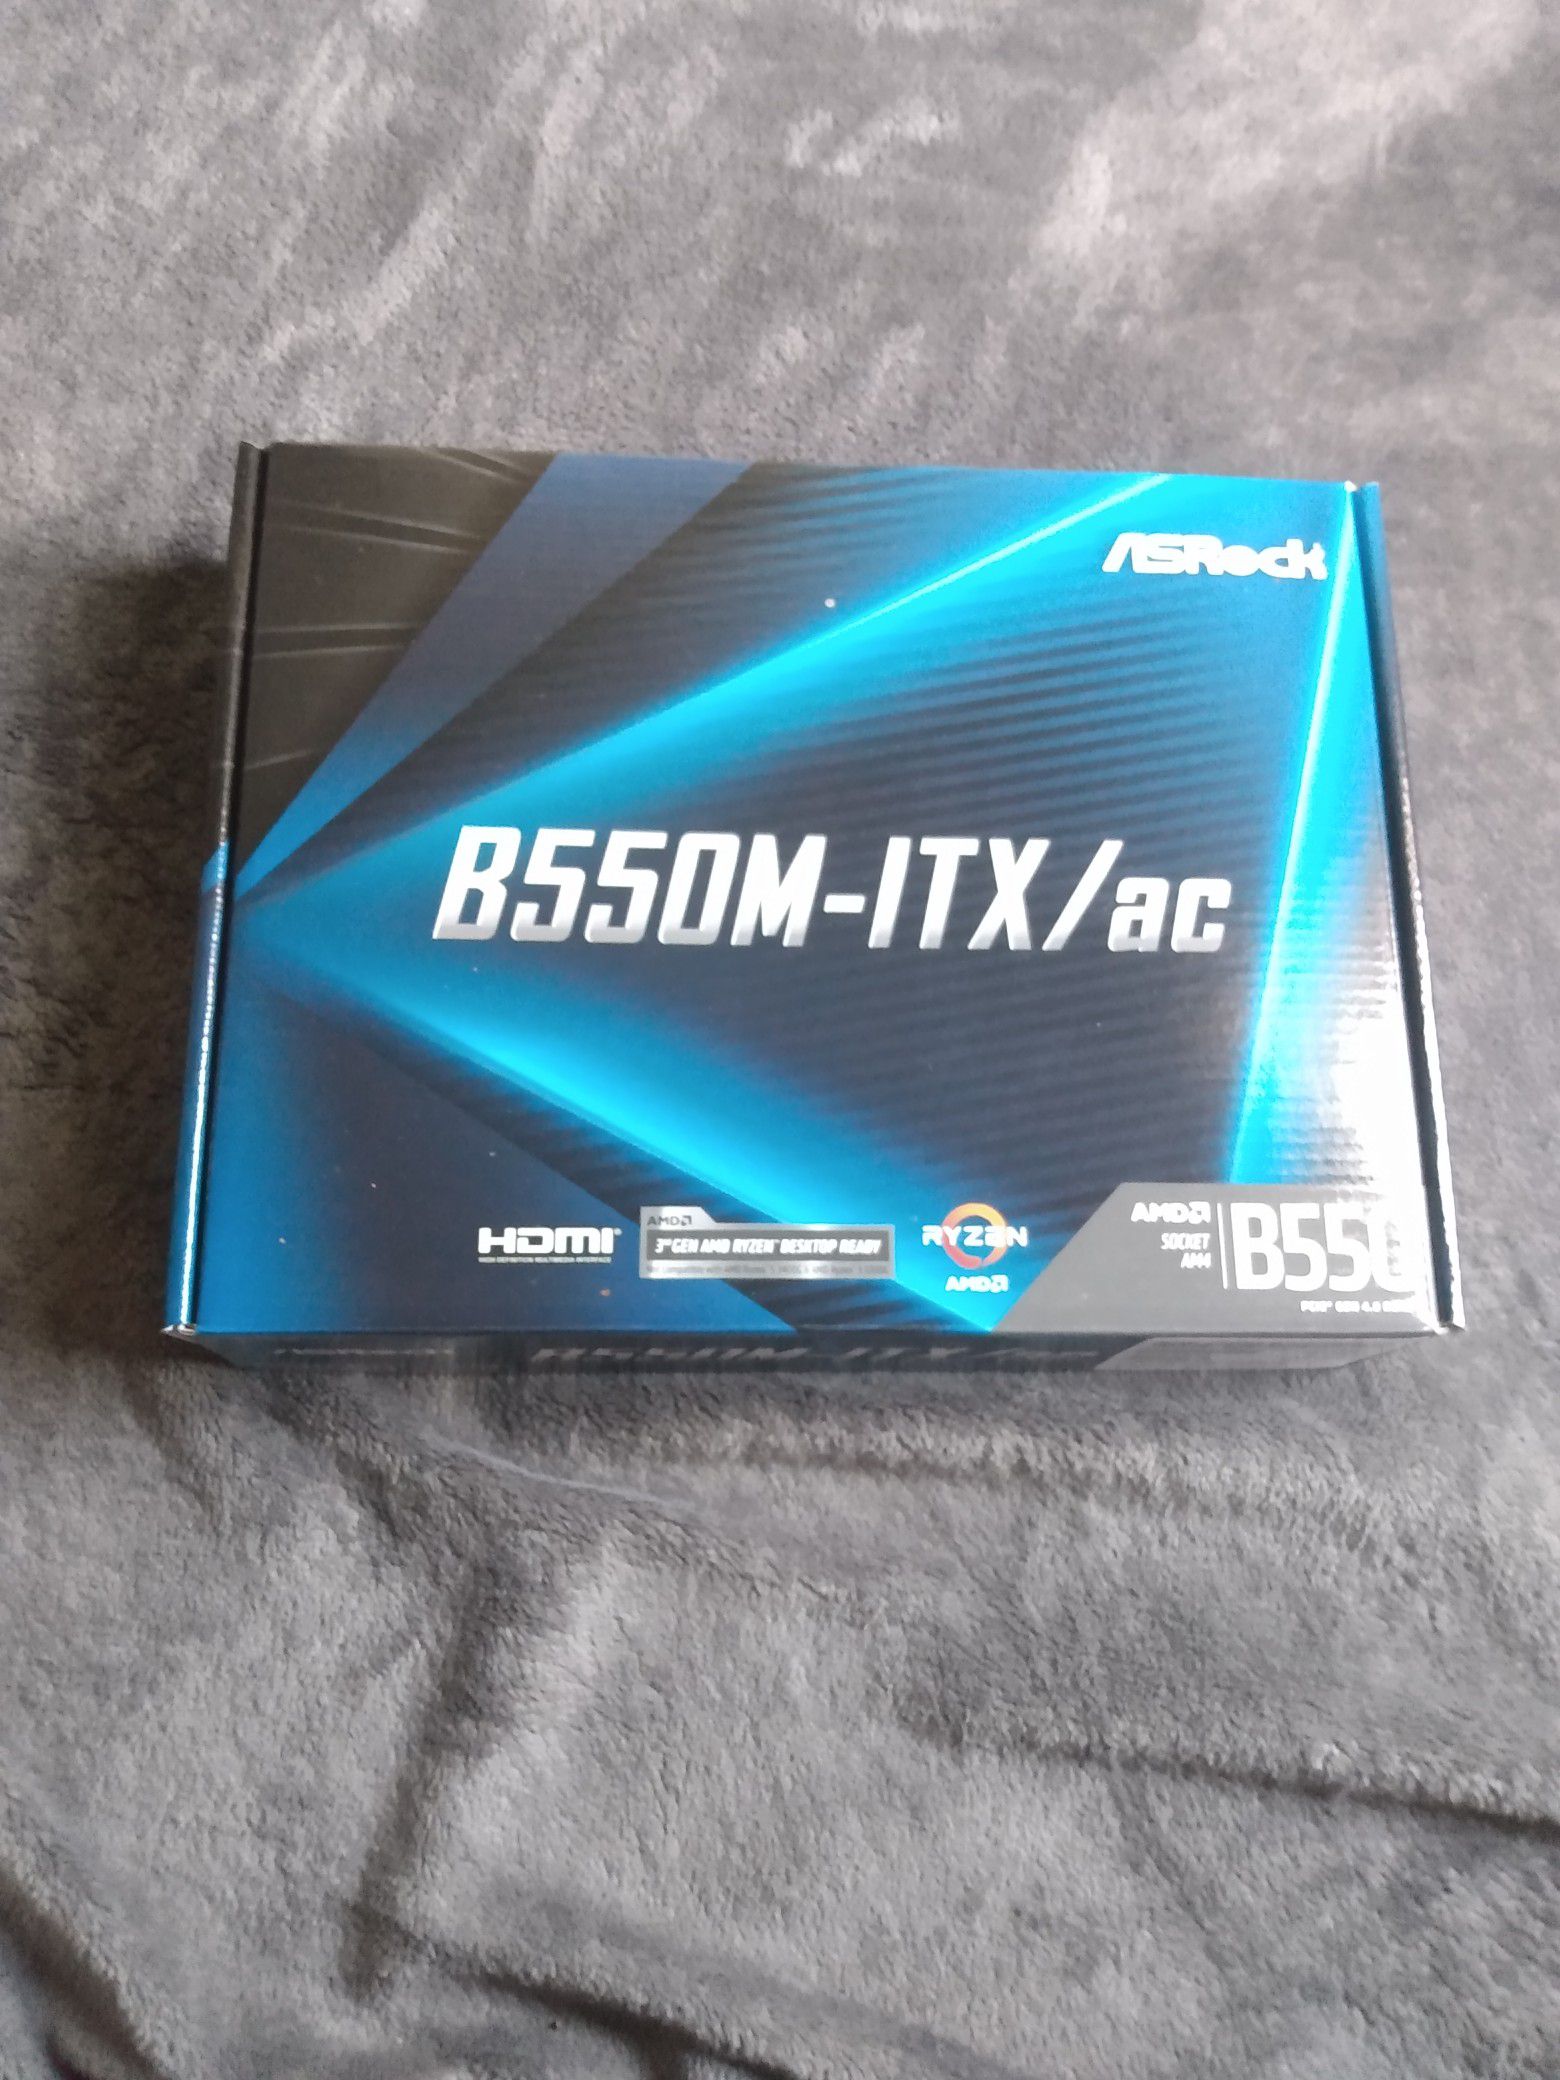 ASRock B550M-ITX/ac Motherboard